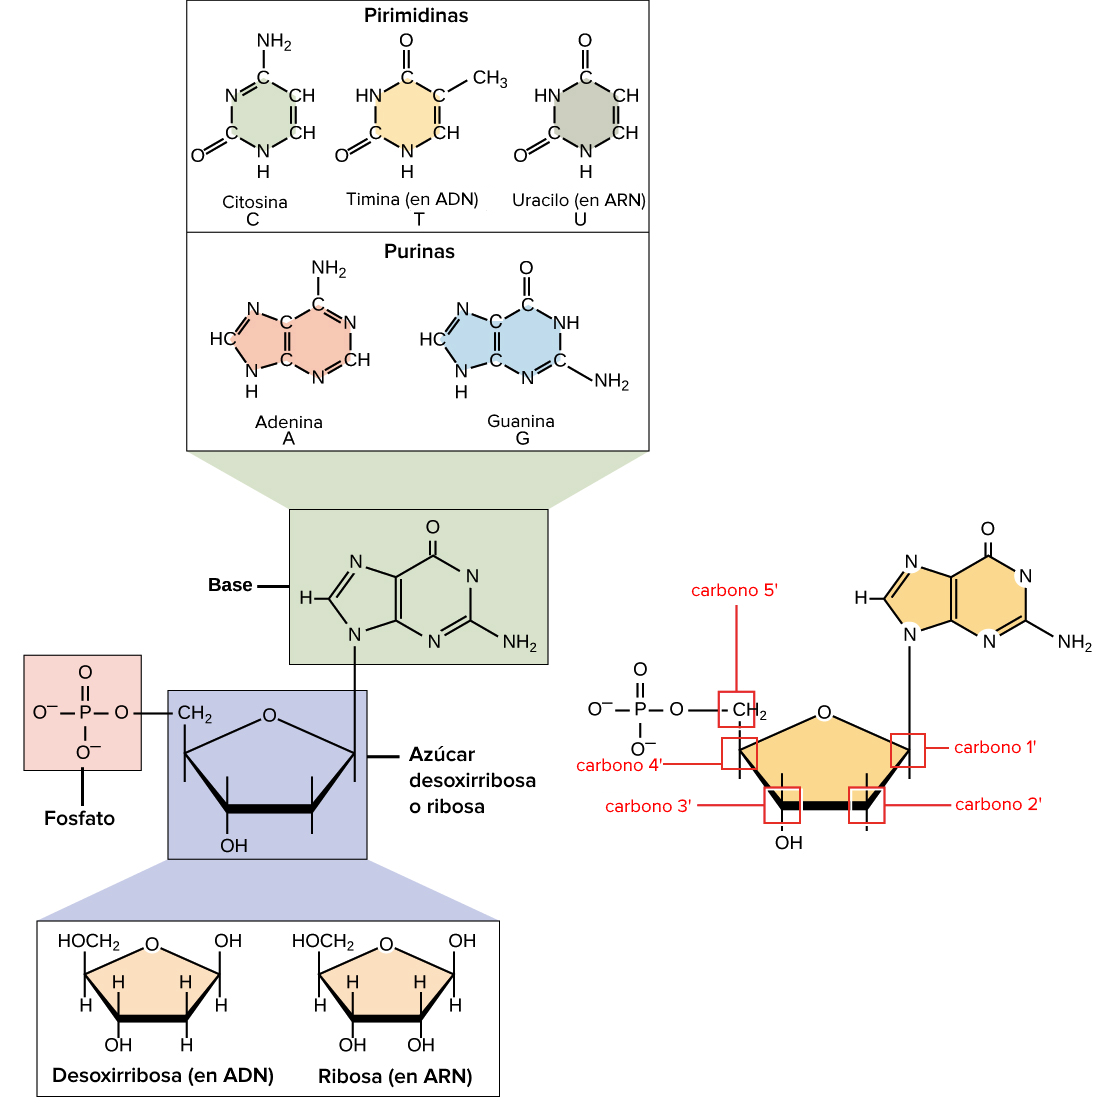 Imagen de los componentes del ADN y ARN, que incluyen el azúcar (desoxirribosa o ribosa), el grupo fosfato y la base nitrogenada. Las bases comprenden las bases pirimidinas que tienen un anillo (citosina y timina en el ADN, y uracilo en el ARN) y las bases purinas con dos anillos (adenina y guanina). El grupo fosfato se une al carbono 5'. El carbono 2' tiene un grupo hidroxilo en la ribosa, pero solo hidrógeno (no hidroxilo) en la desoxirribosa.